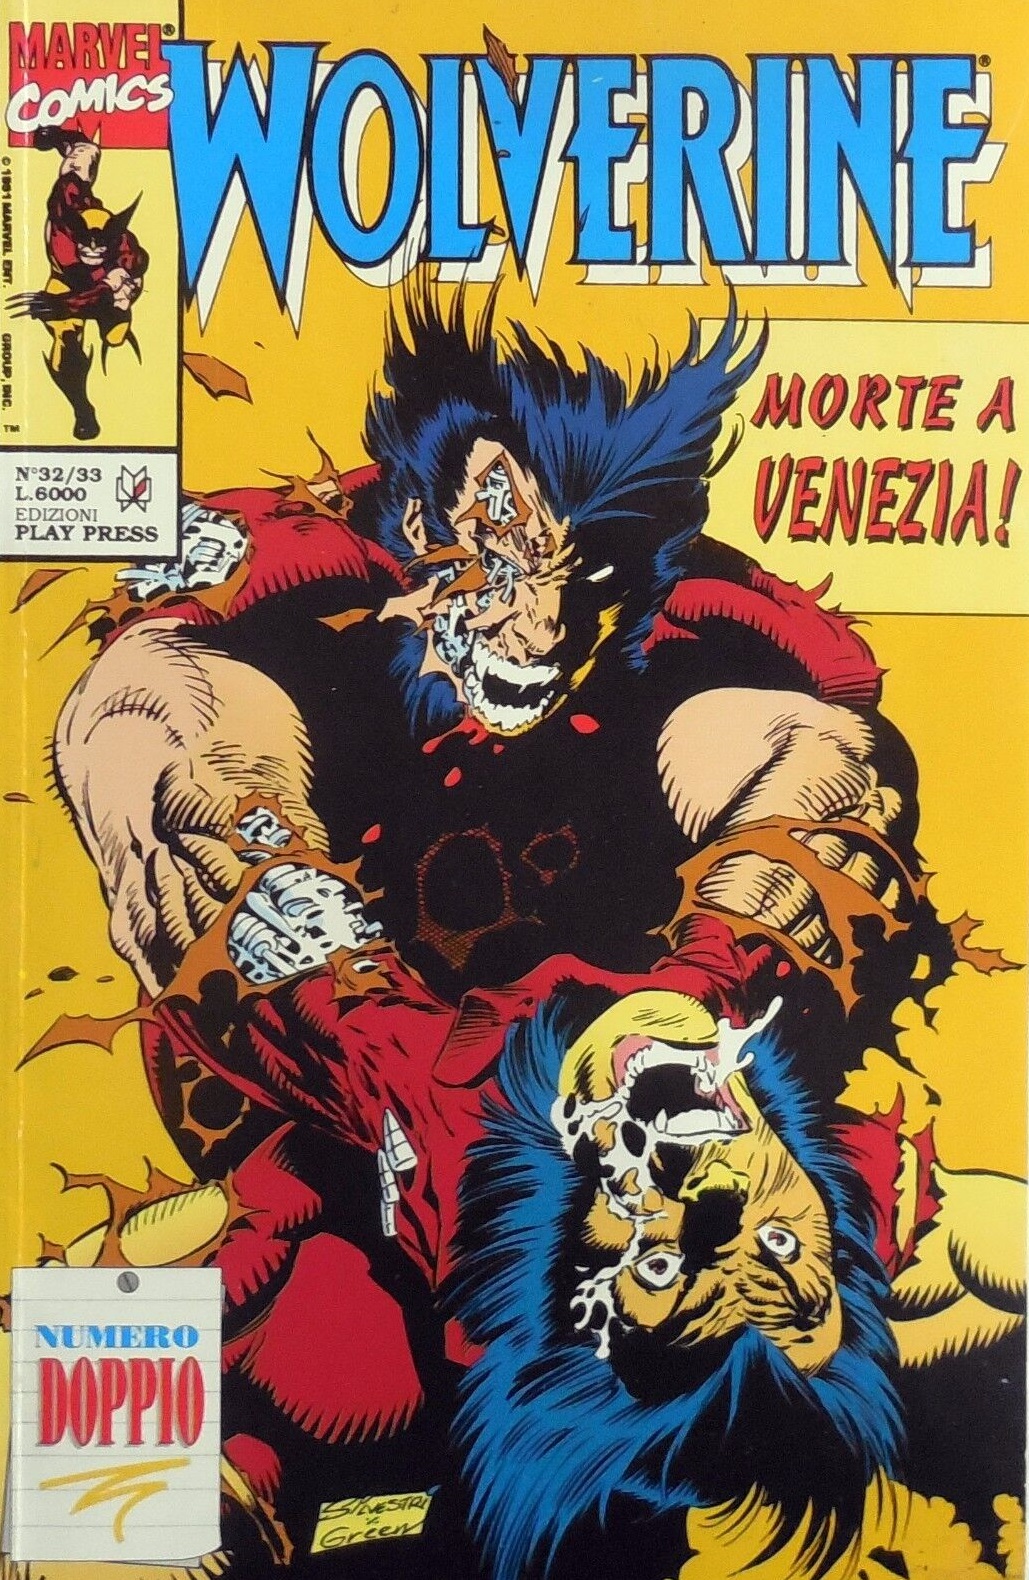 Wolverine # 32/33